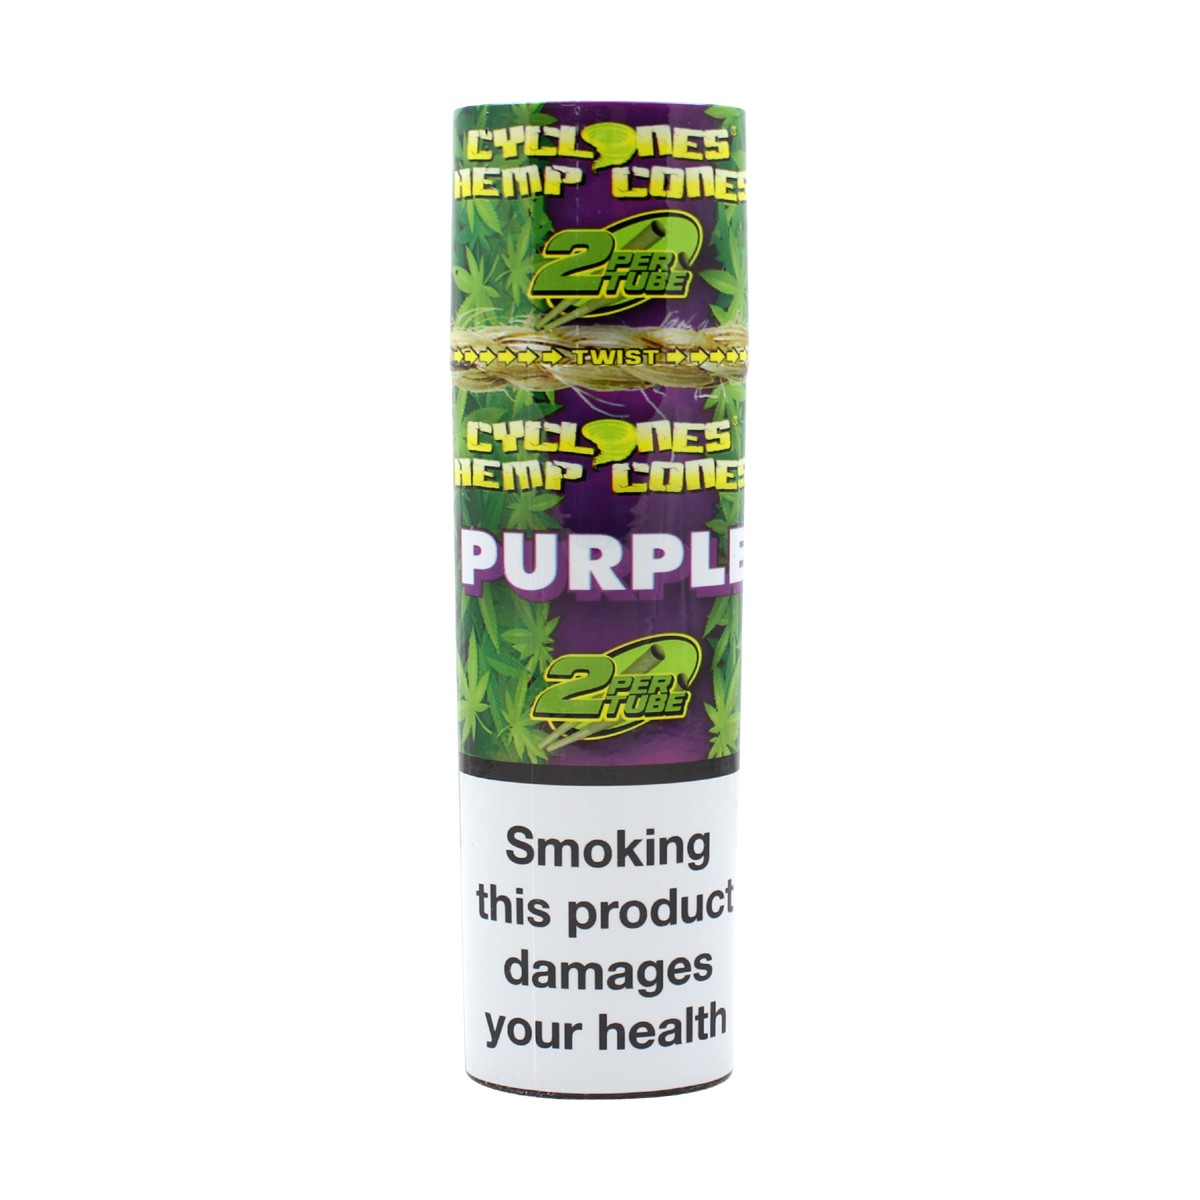 Hemp Blunt Cone Purple 2 stk